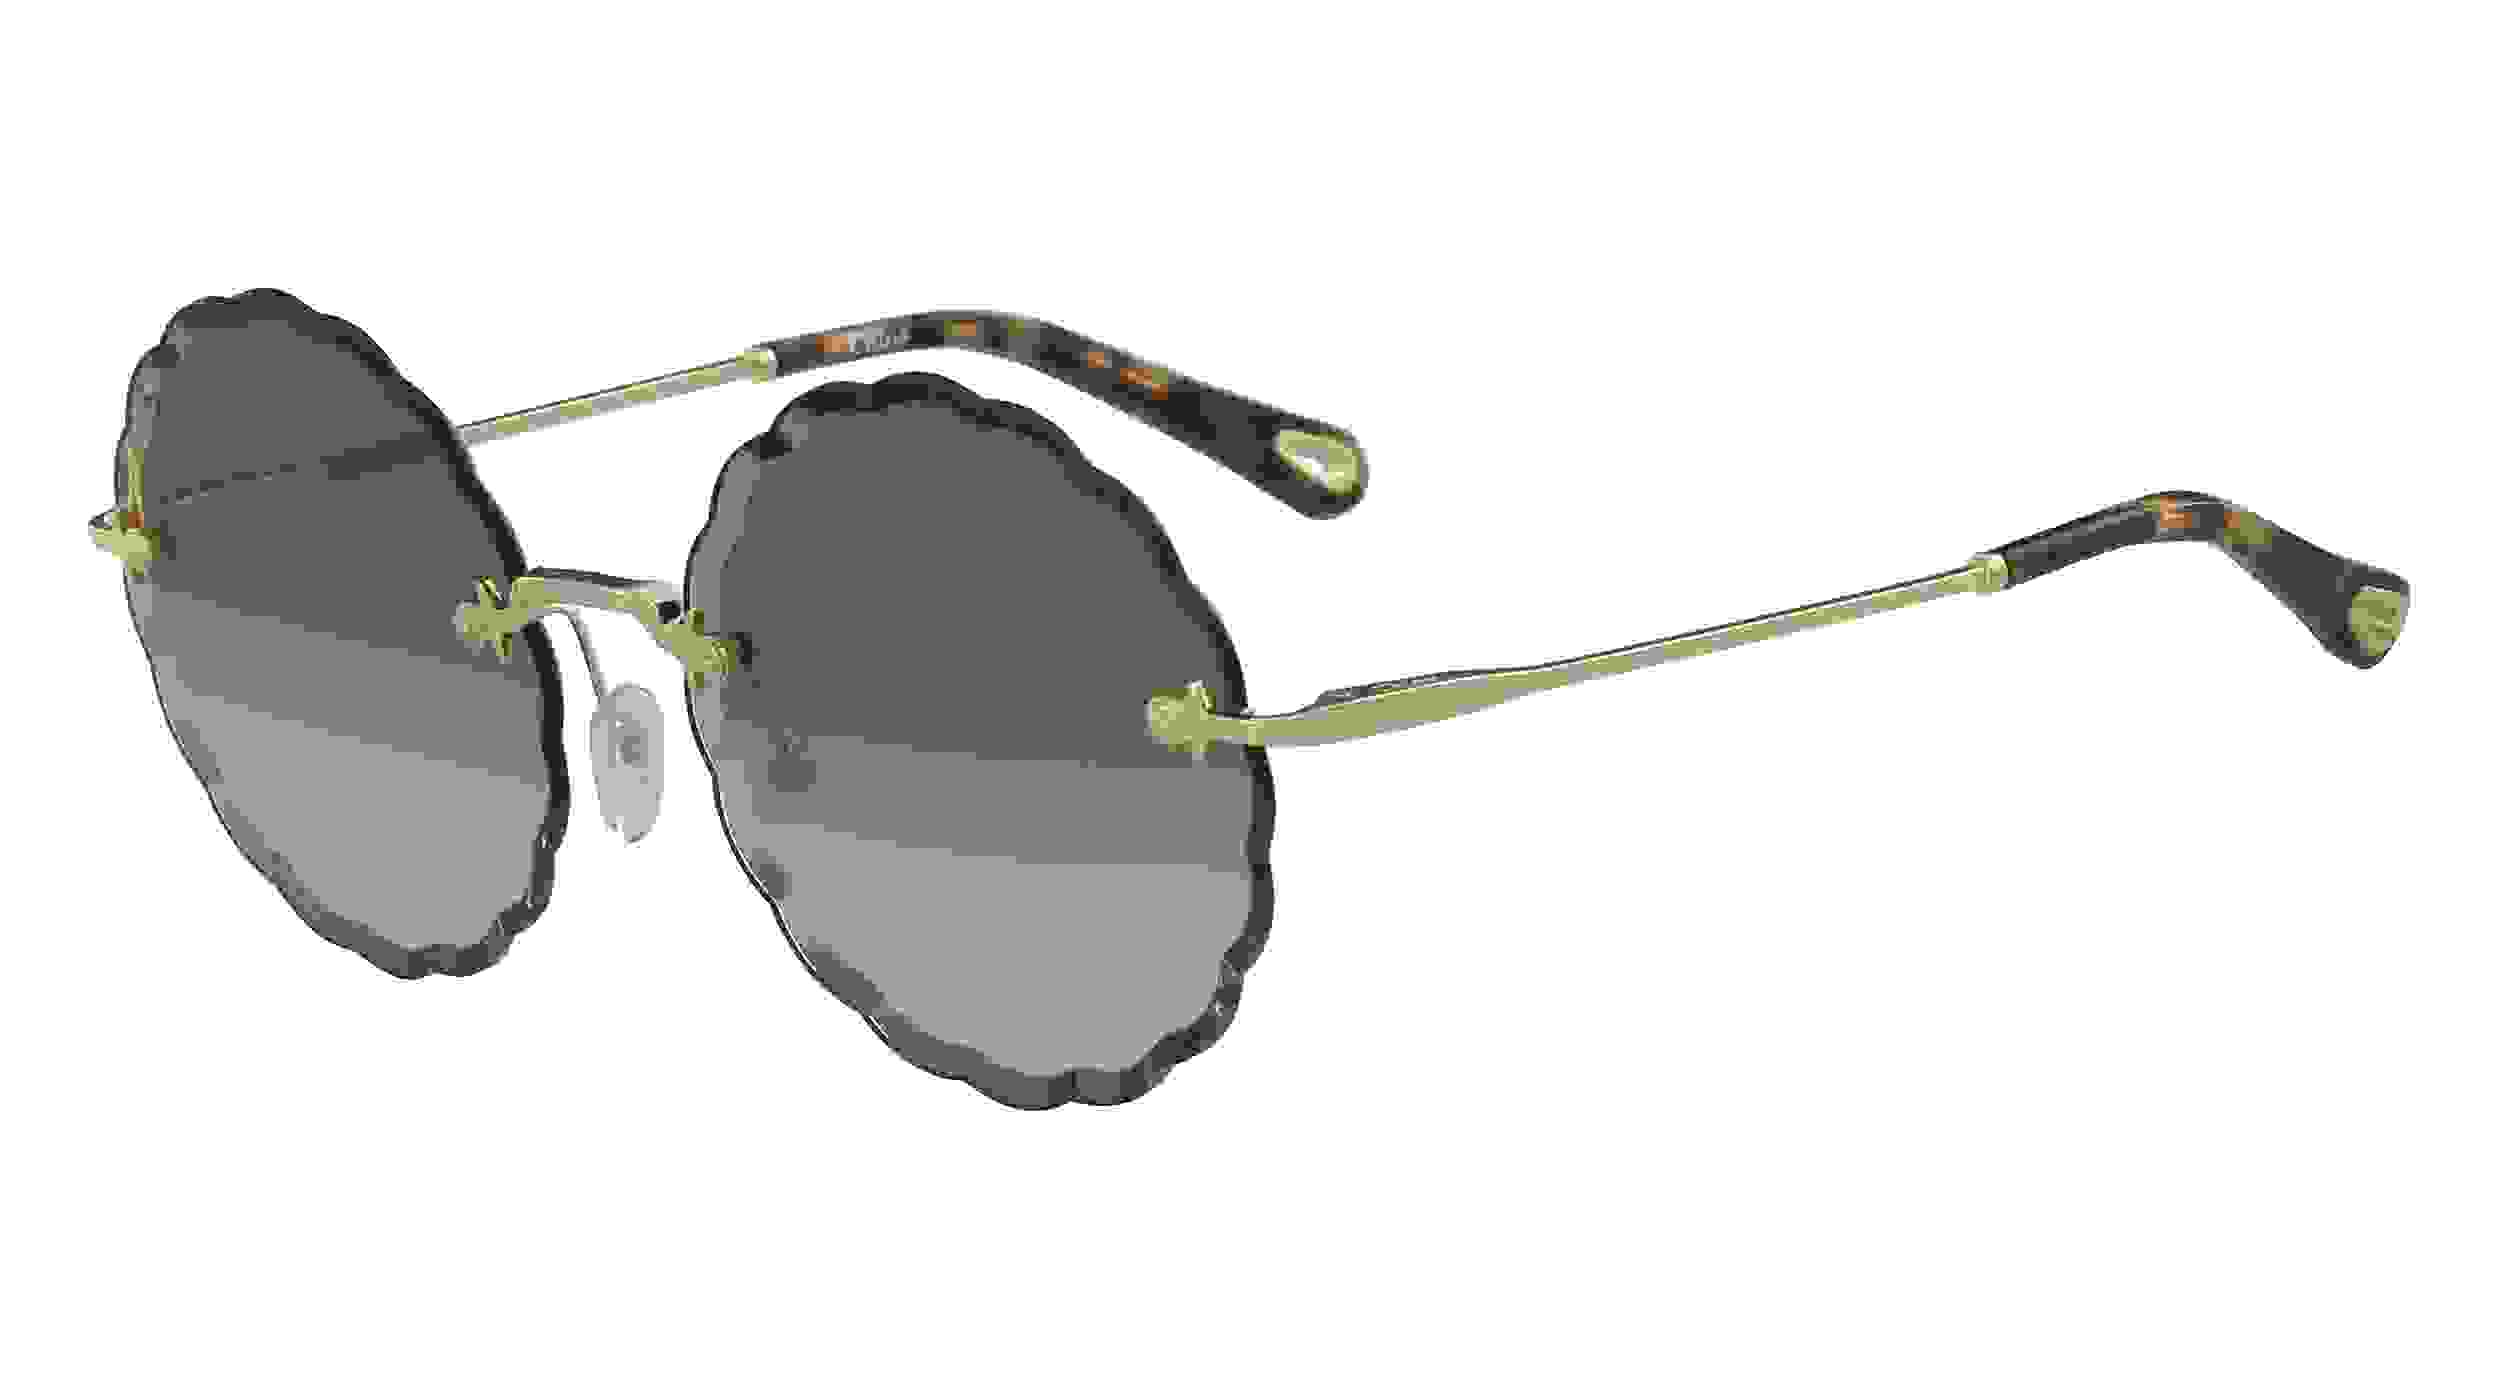 Runde Sonnenbrille von Cloé mit dunklen Applikationen am Rahmen, braun getönten Brillengläsern und goldenen Bügeln mit braunen Details am Bügelende.